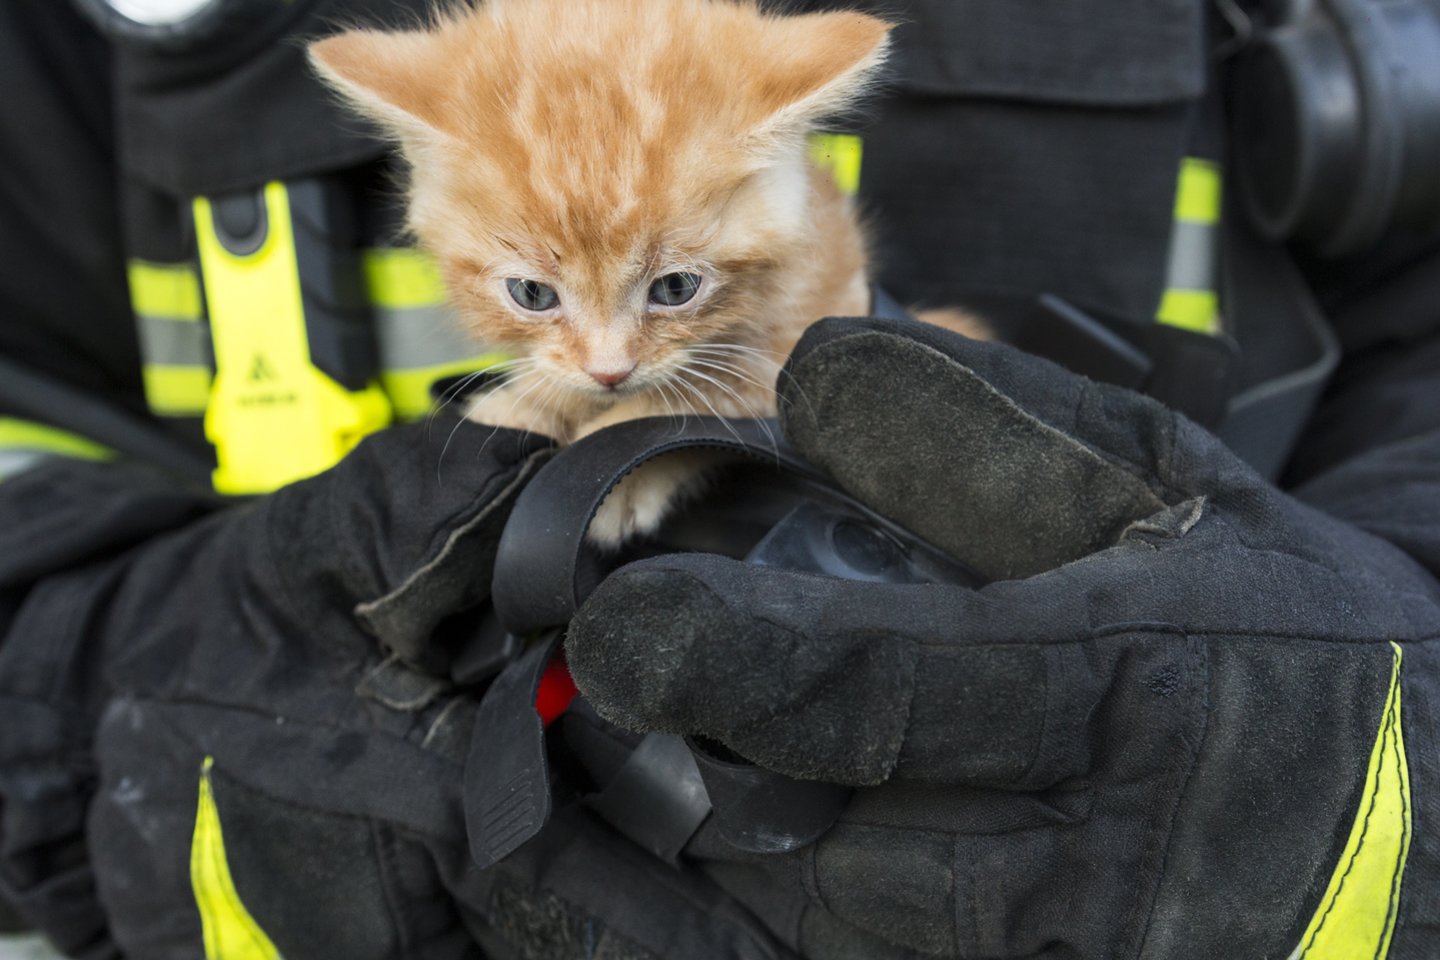 Pirmadienis, kovo 13 d., buvo nelaiminga diena kačiukams – juos gelbėti skubėjo ugniagesiai.<br> 123rf.com nuotr.